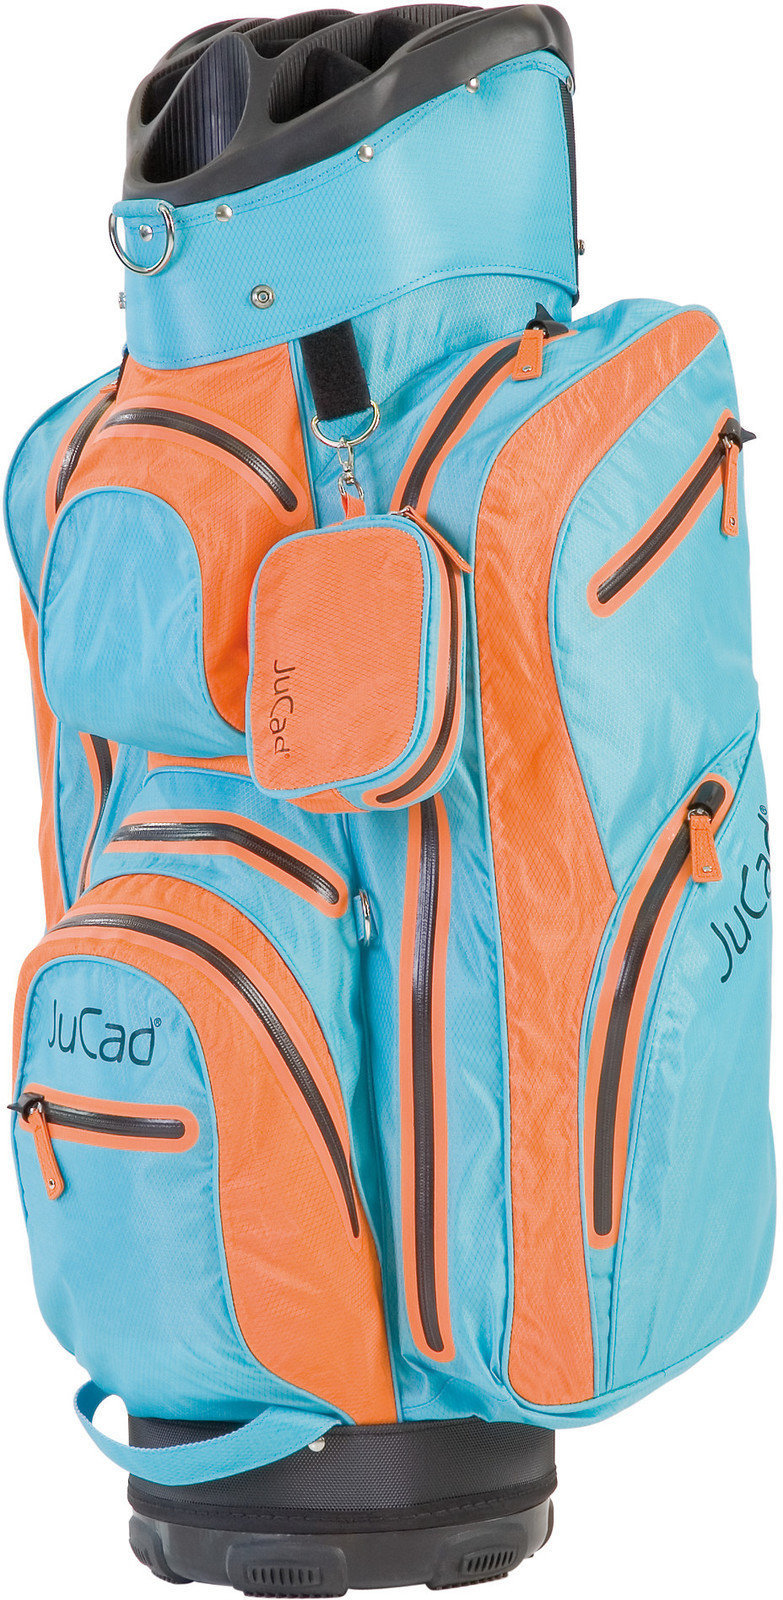 Golf Bag Jucad Aquastop GT Orange/Blue Golf Bag